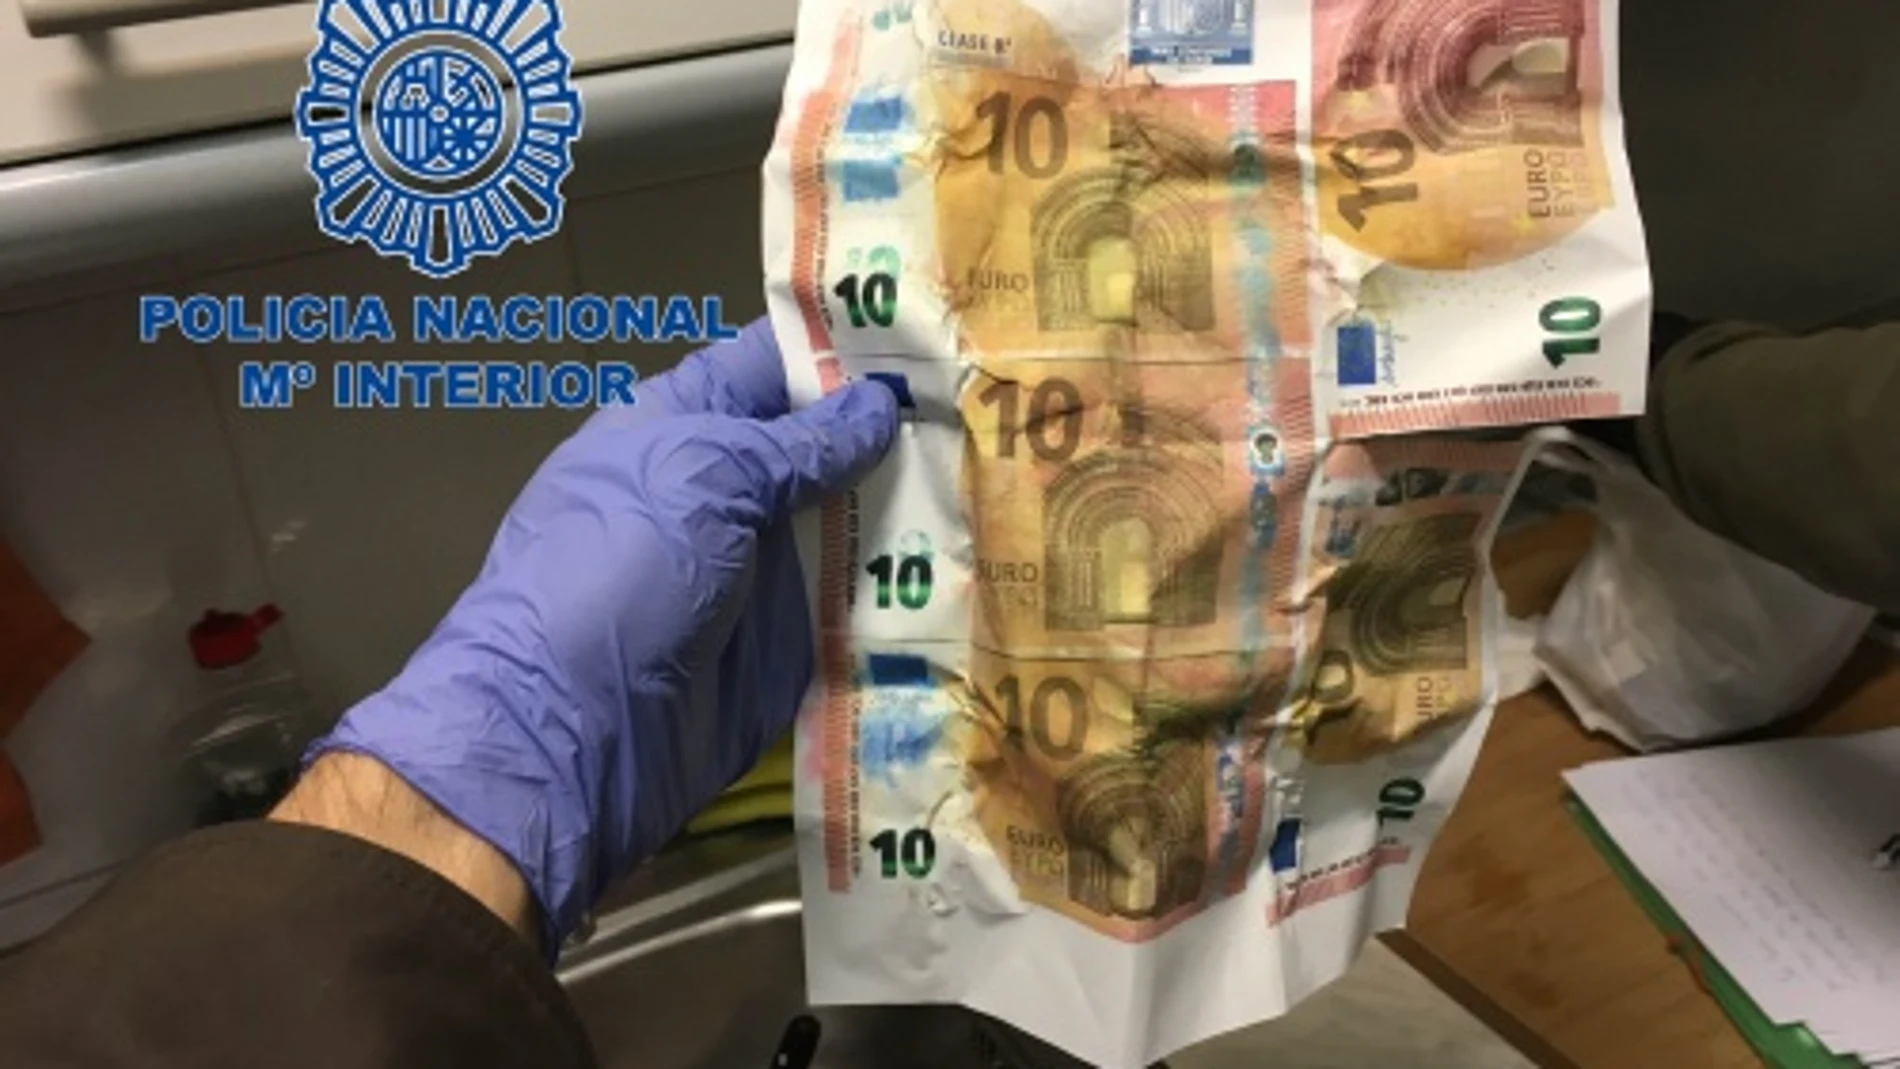 La banda falsificaba billetes de 10 y 20 euros, que distribuían en tiendas por el método de "goteo"